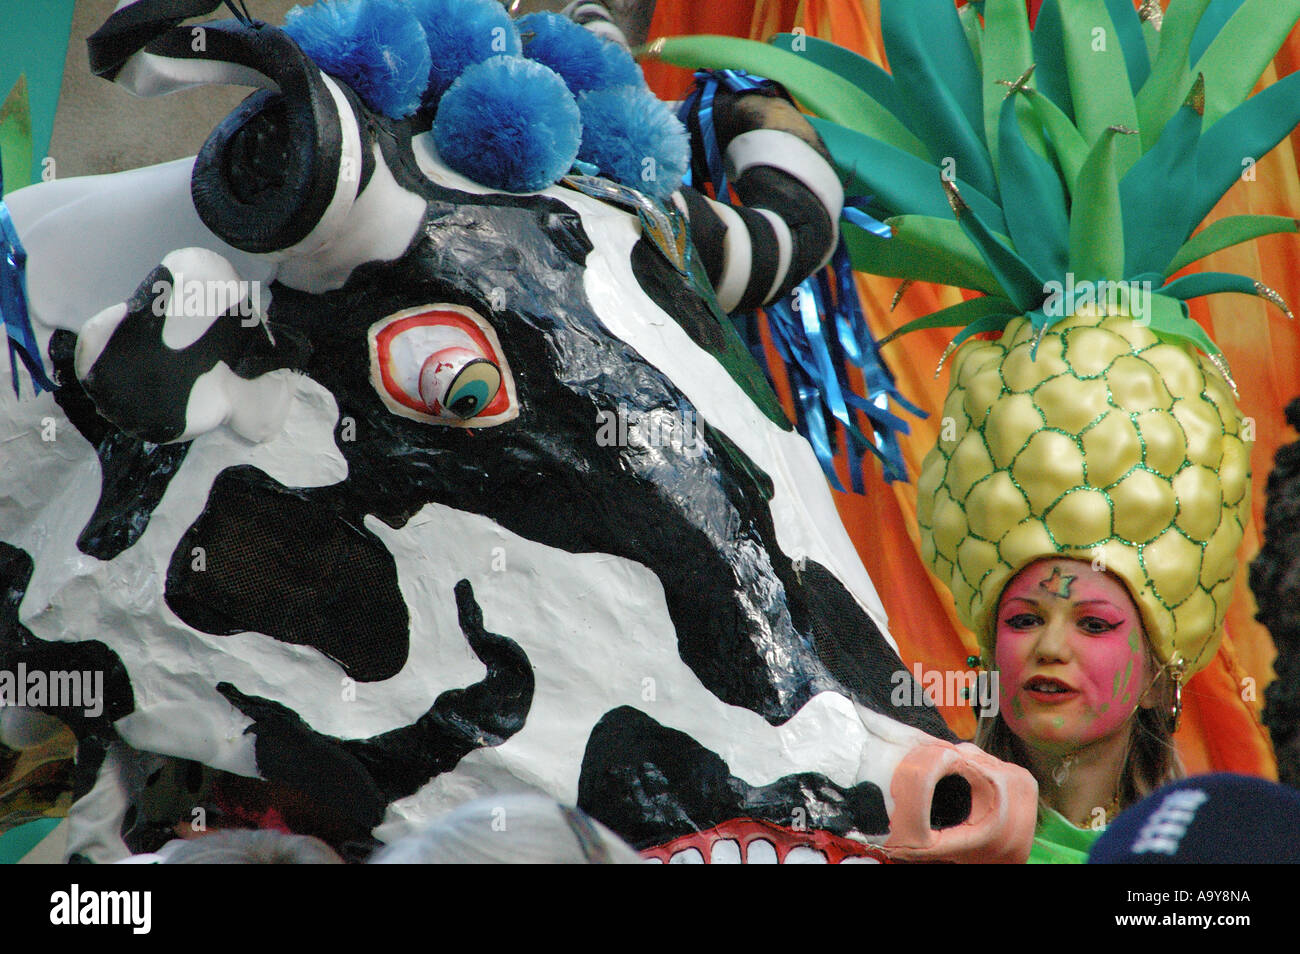 Fille avec une coiffure d'ananas nid permanent à un costume vache géante à la grande aspiration ouverture procession carnaval, Londres, UK Banque D'Images